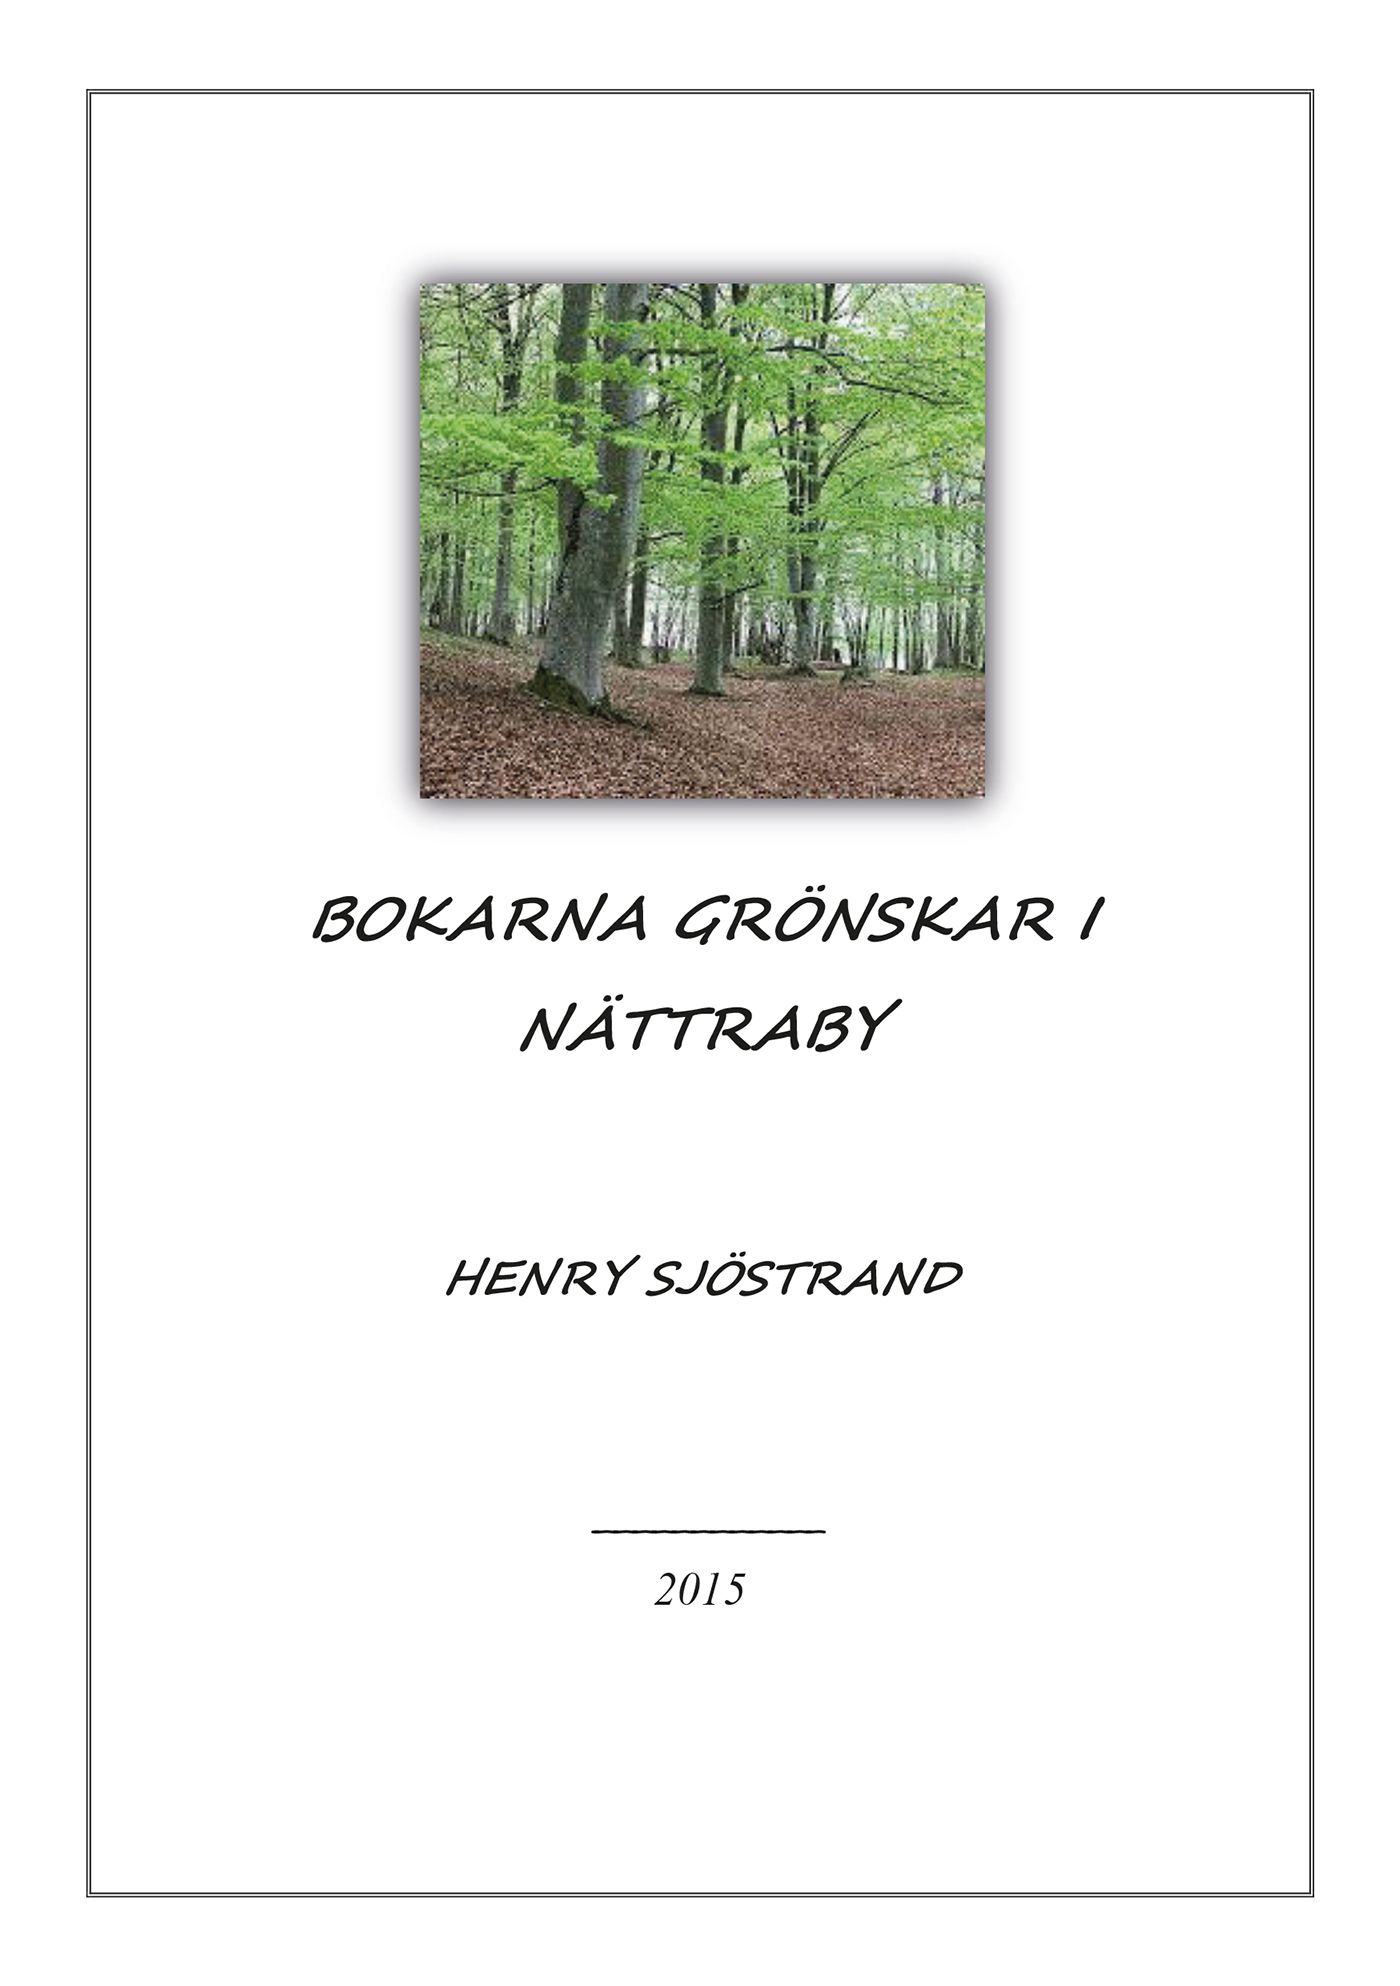 Bokarna grönskar i Nättraby, eBook by Henry Sjöstrand